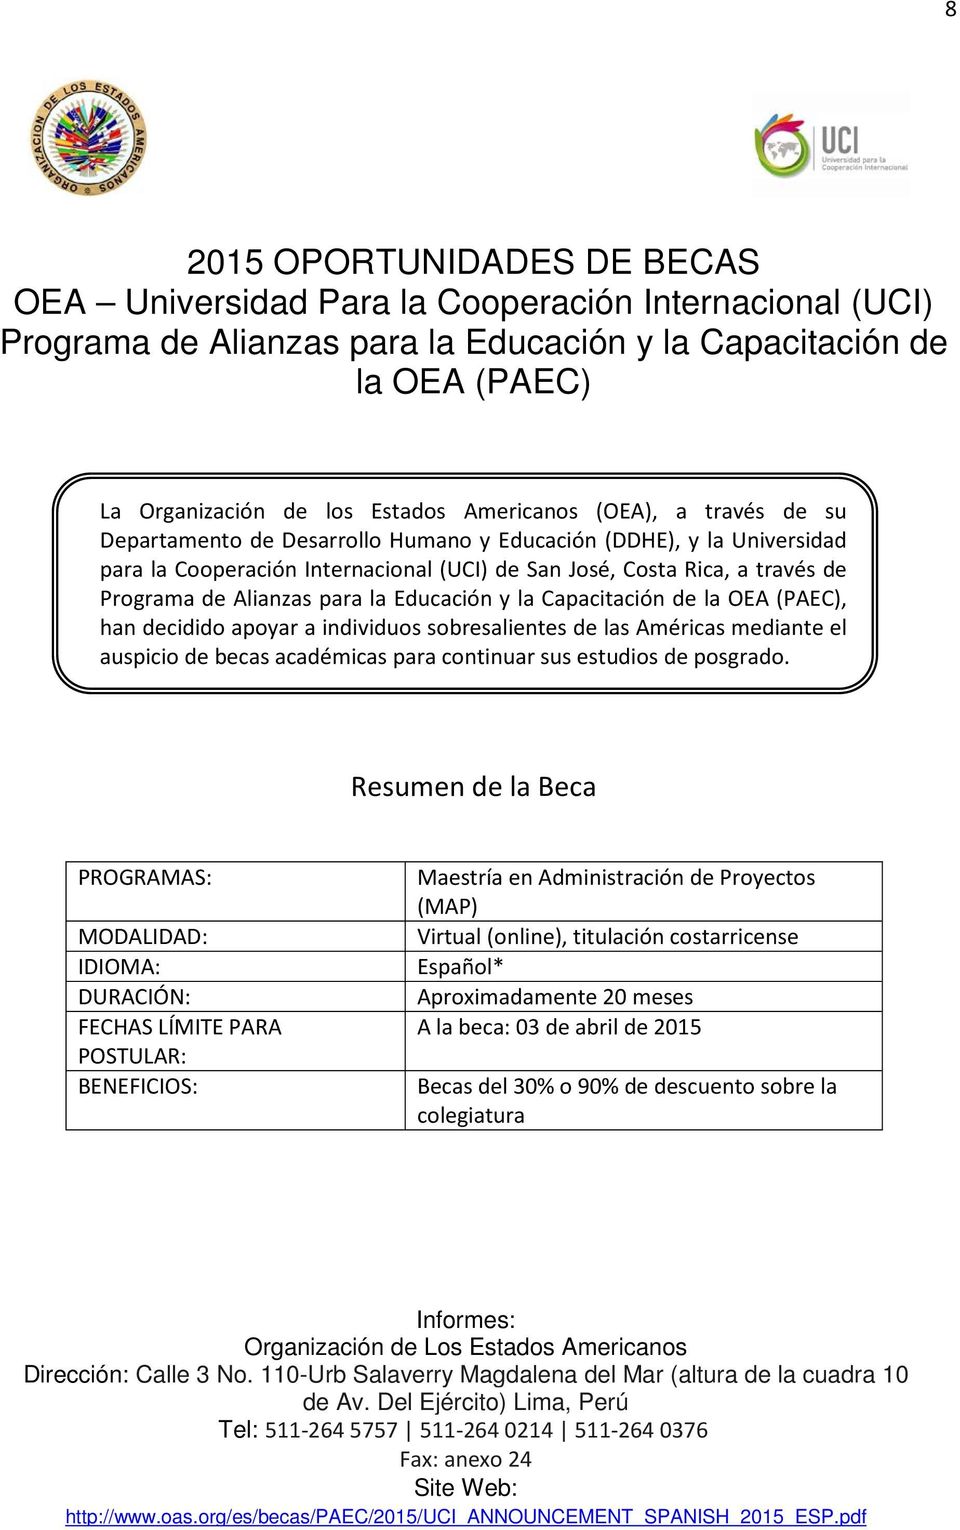 Alianzas para la Educación y la Capacitación de la OEA (PAEC), han decidido apoyar a individuos sobresalientes de las Américas mediante el auspicio de becas académicas para continuar sus estudios de